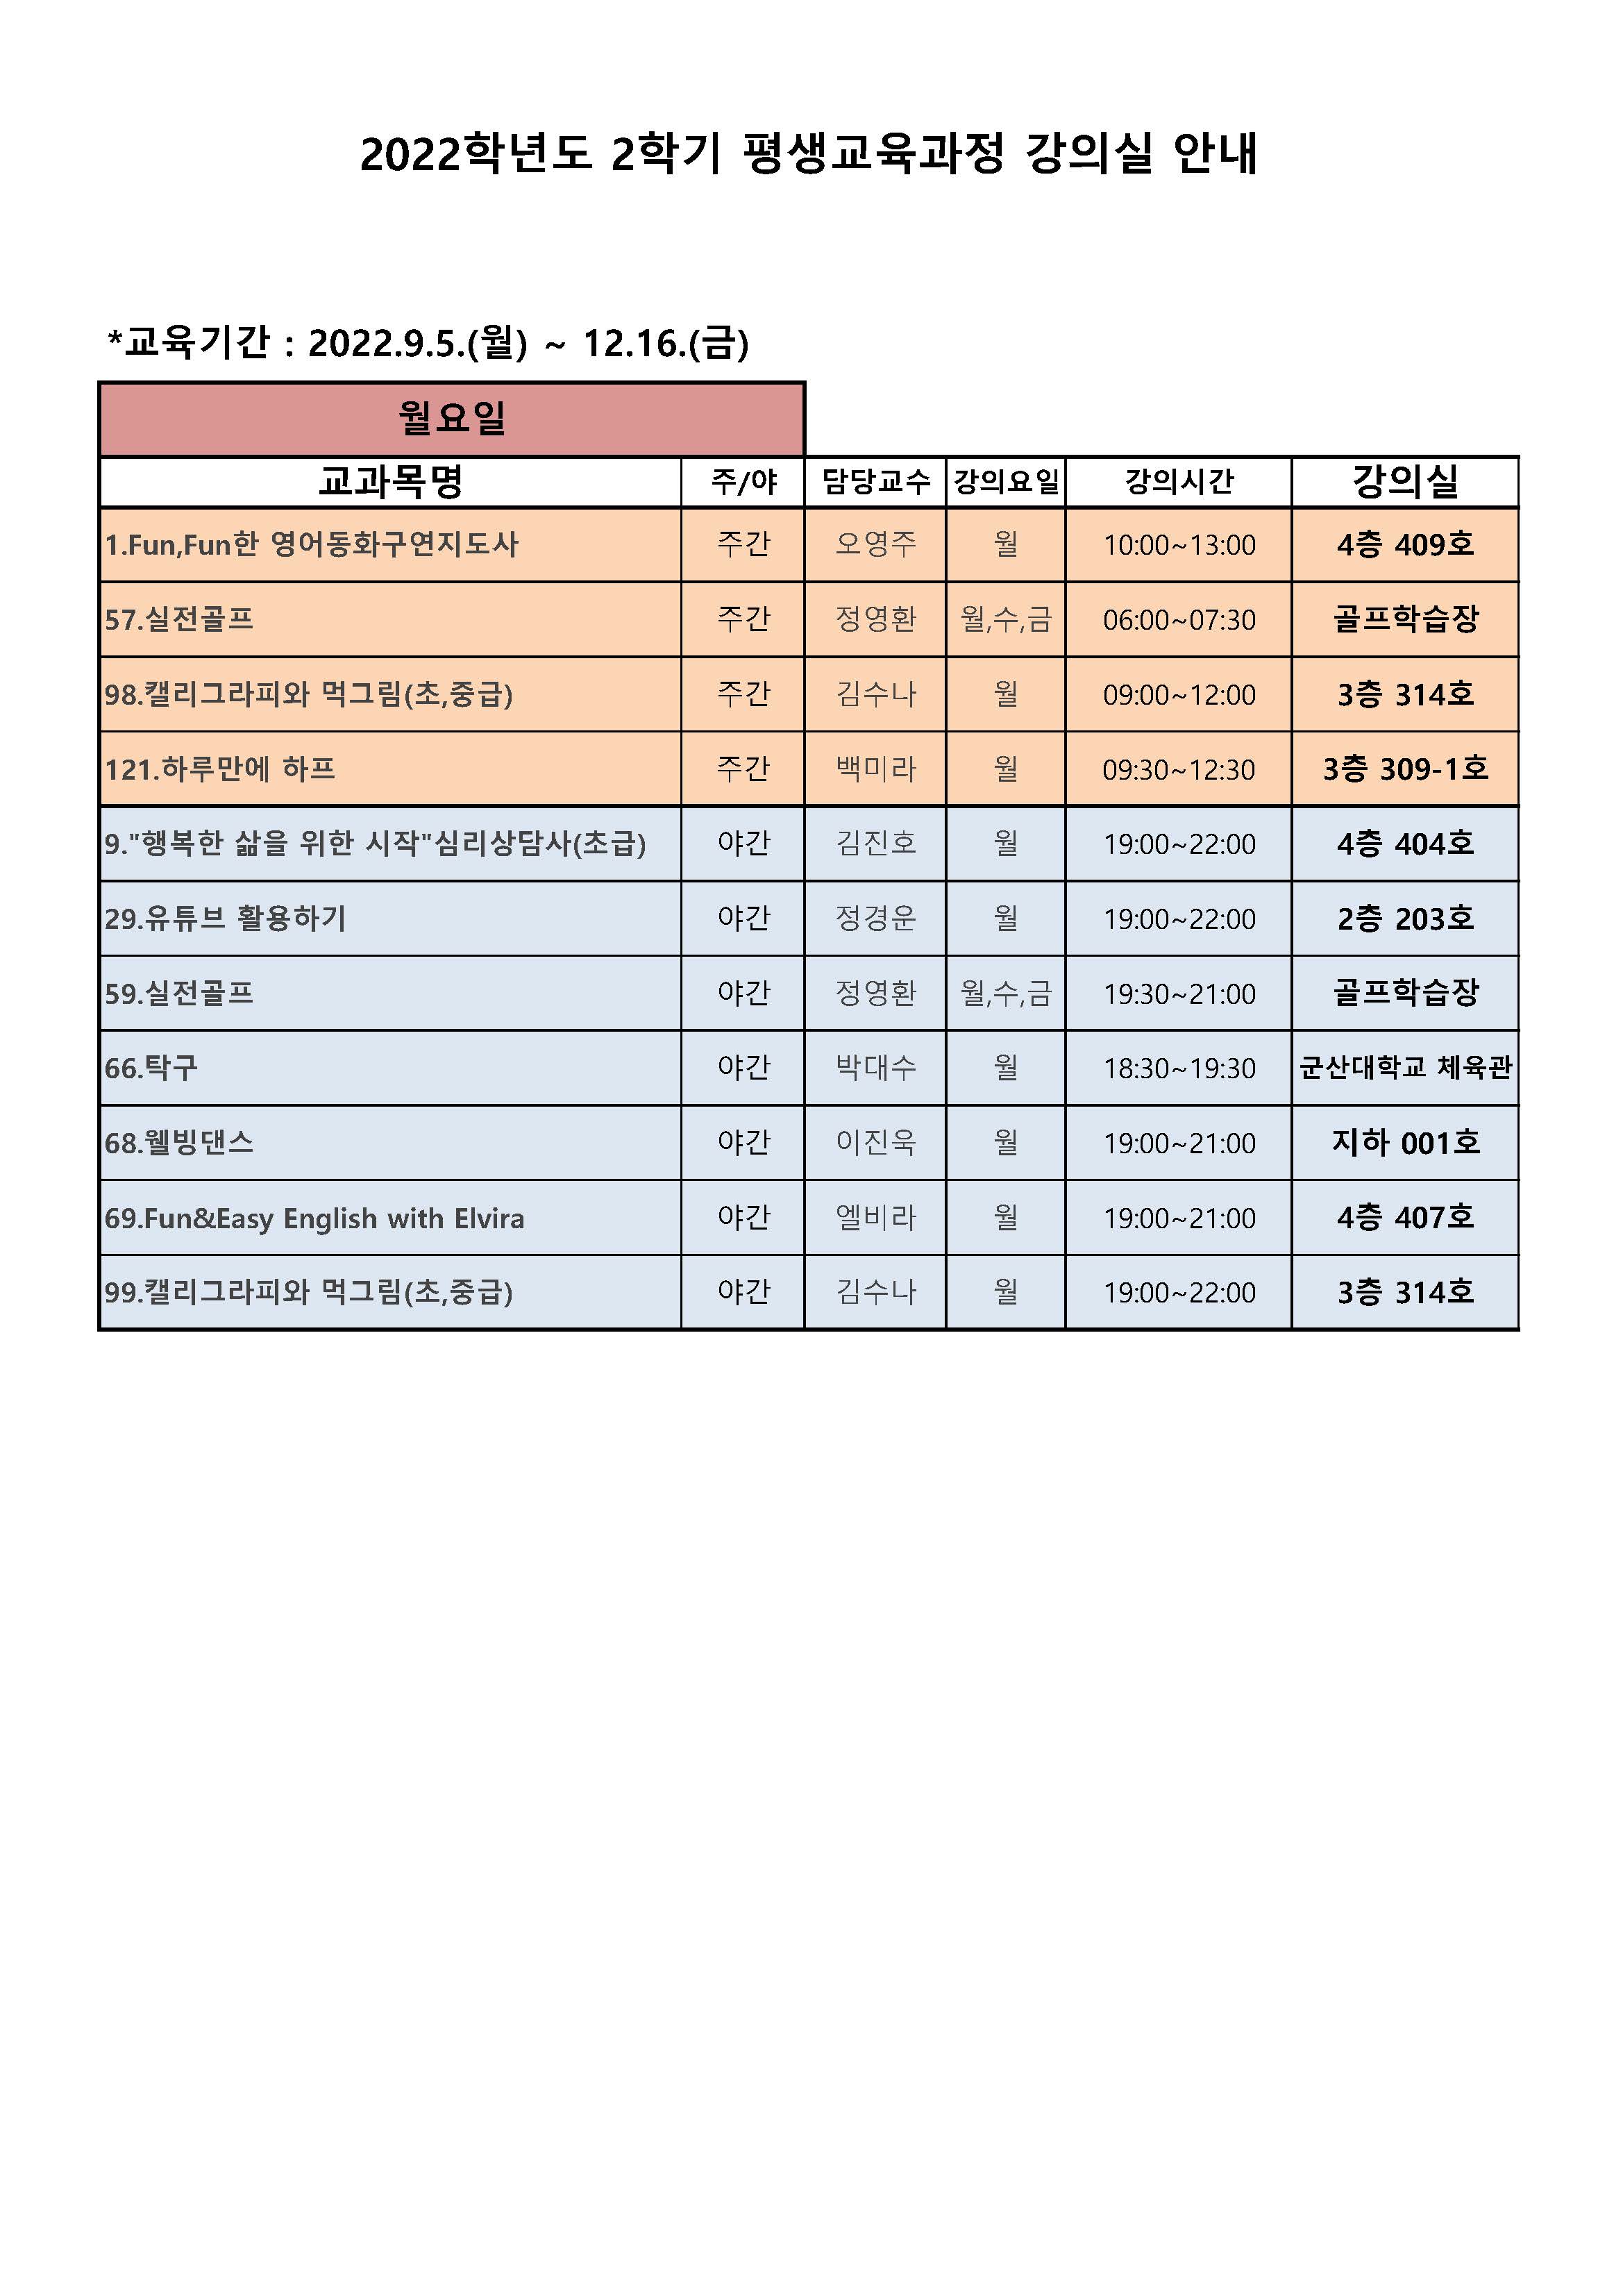 2022학년도2학기강의실배정현황(배포용)_페이지_1.jpg